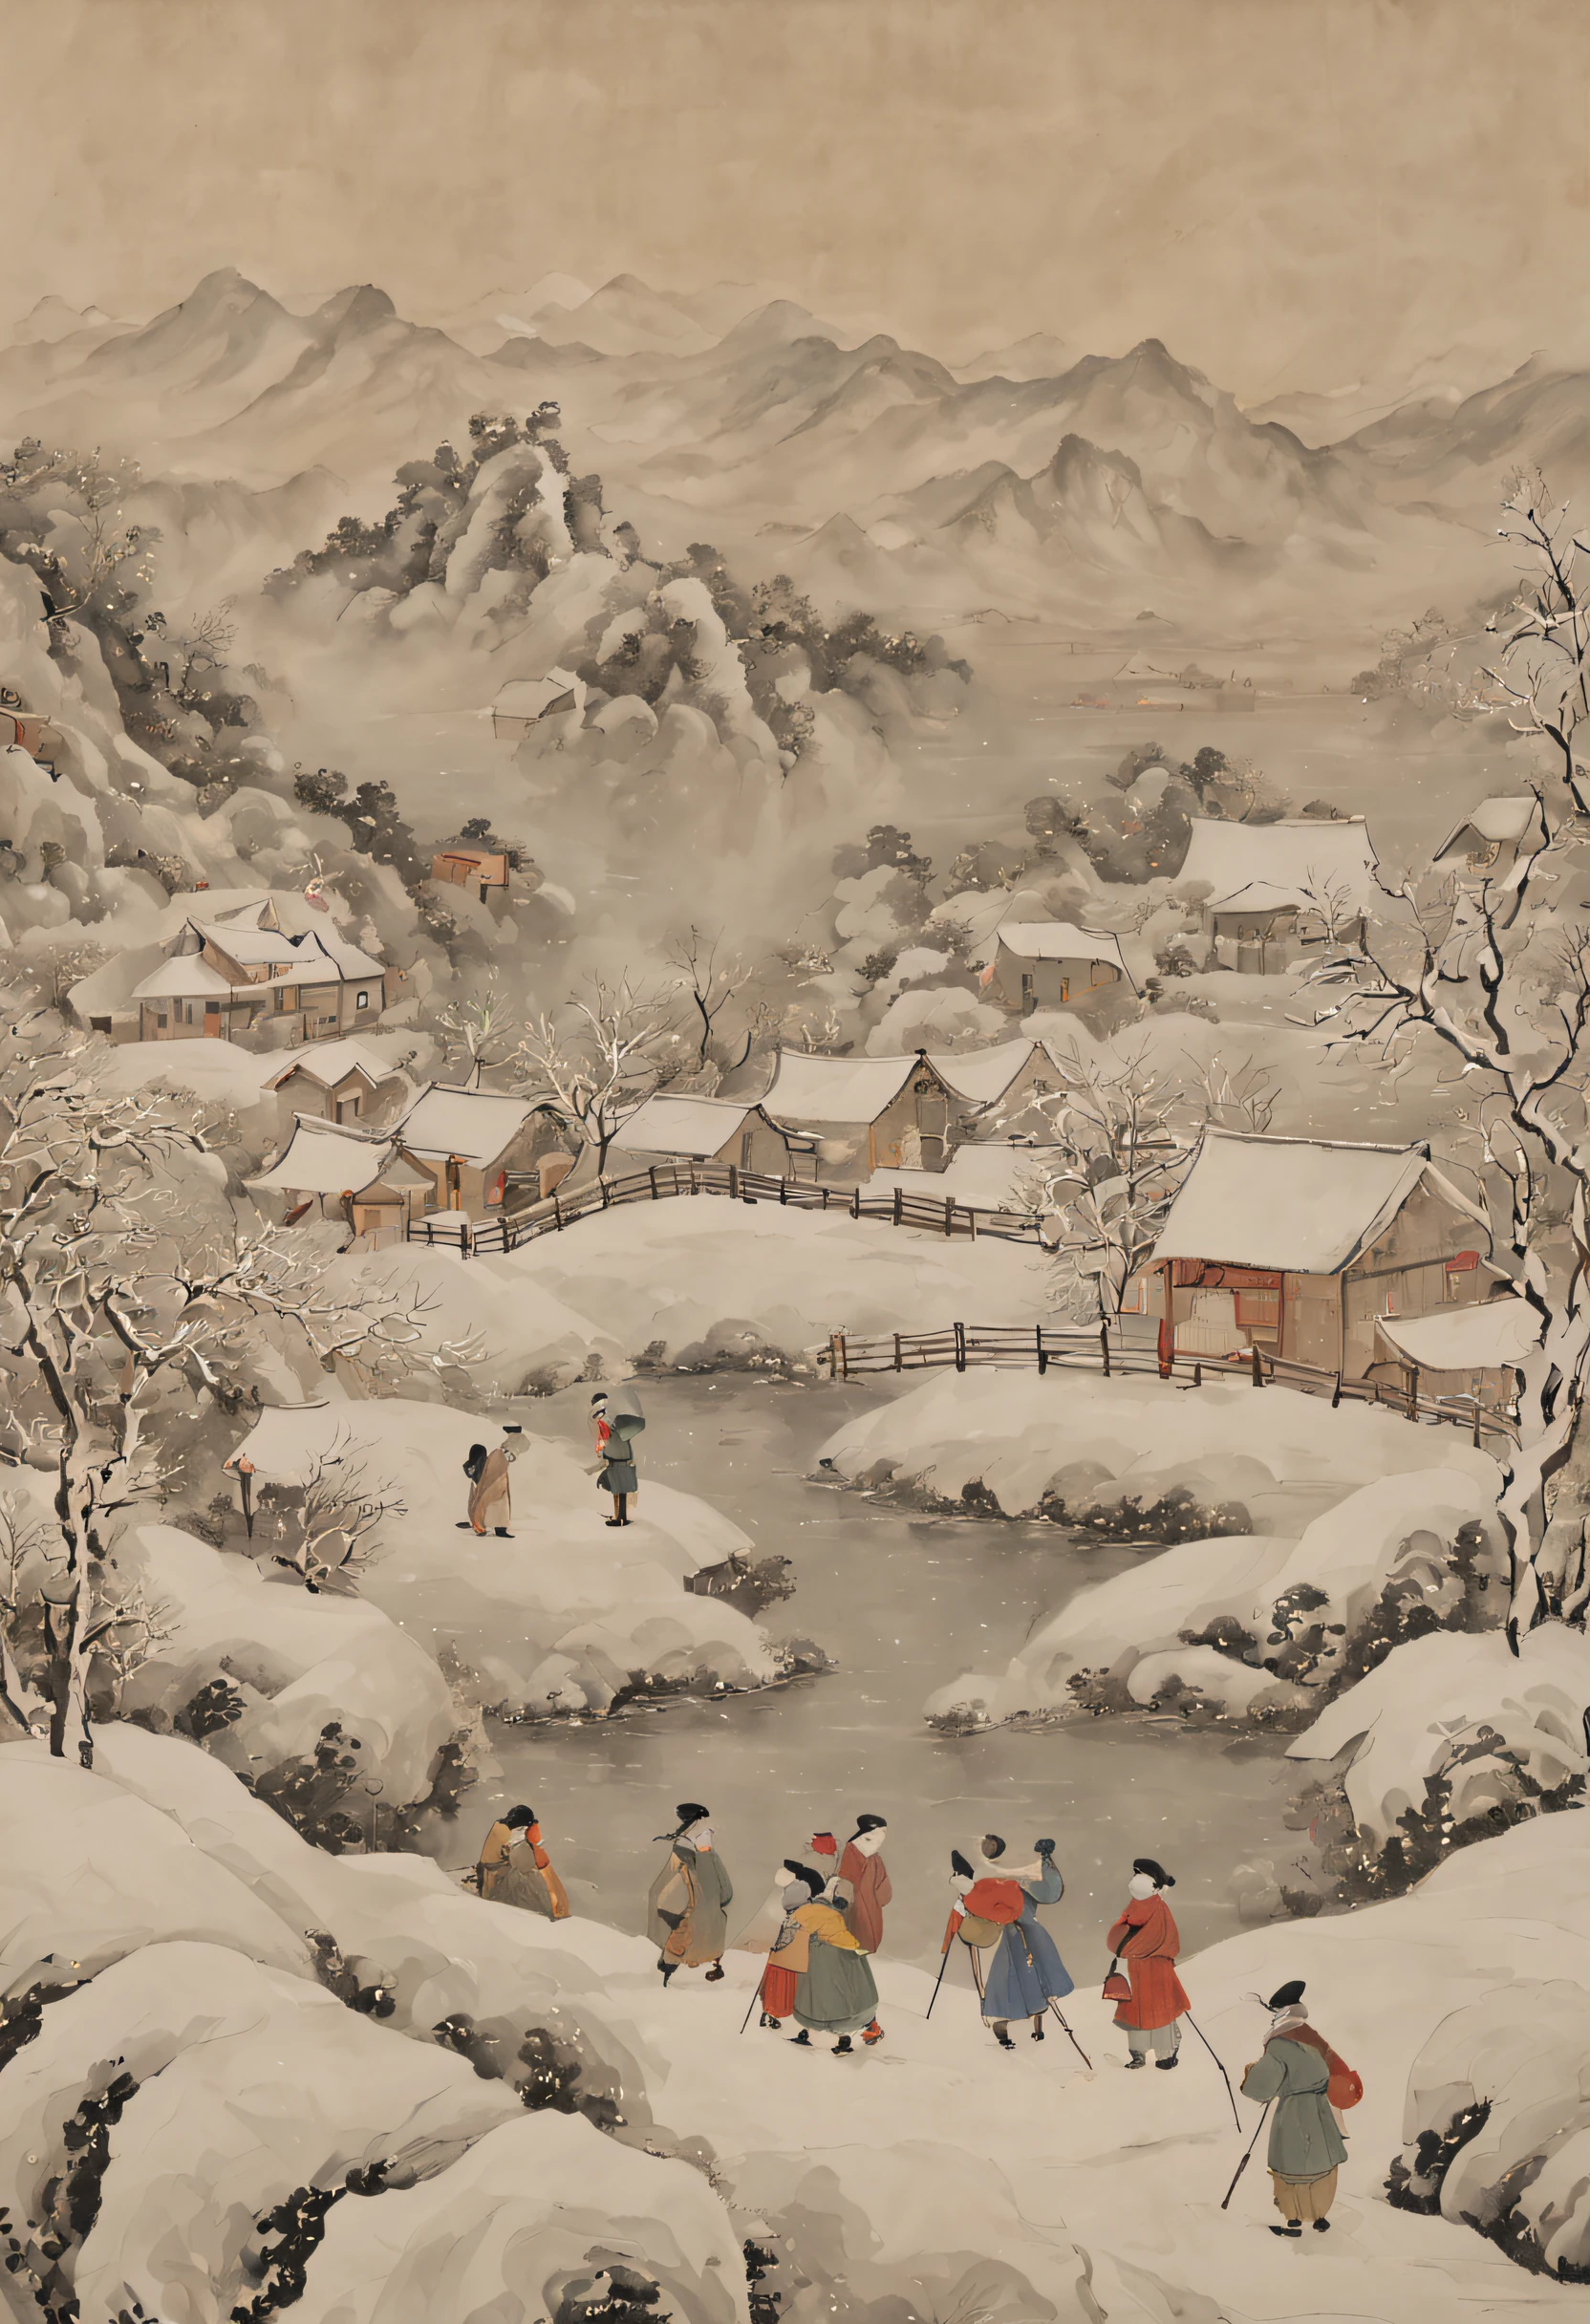 冬季，伝統的な中国絵画，アンティークな雰囲気，高地，カレッジ，多くの子供たちが雪だるま遊びをしている，茶番，シーン，明確な詳細